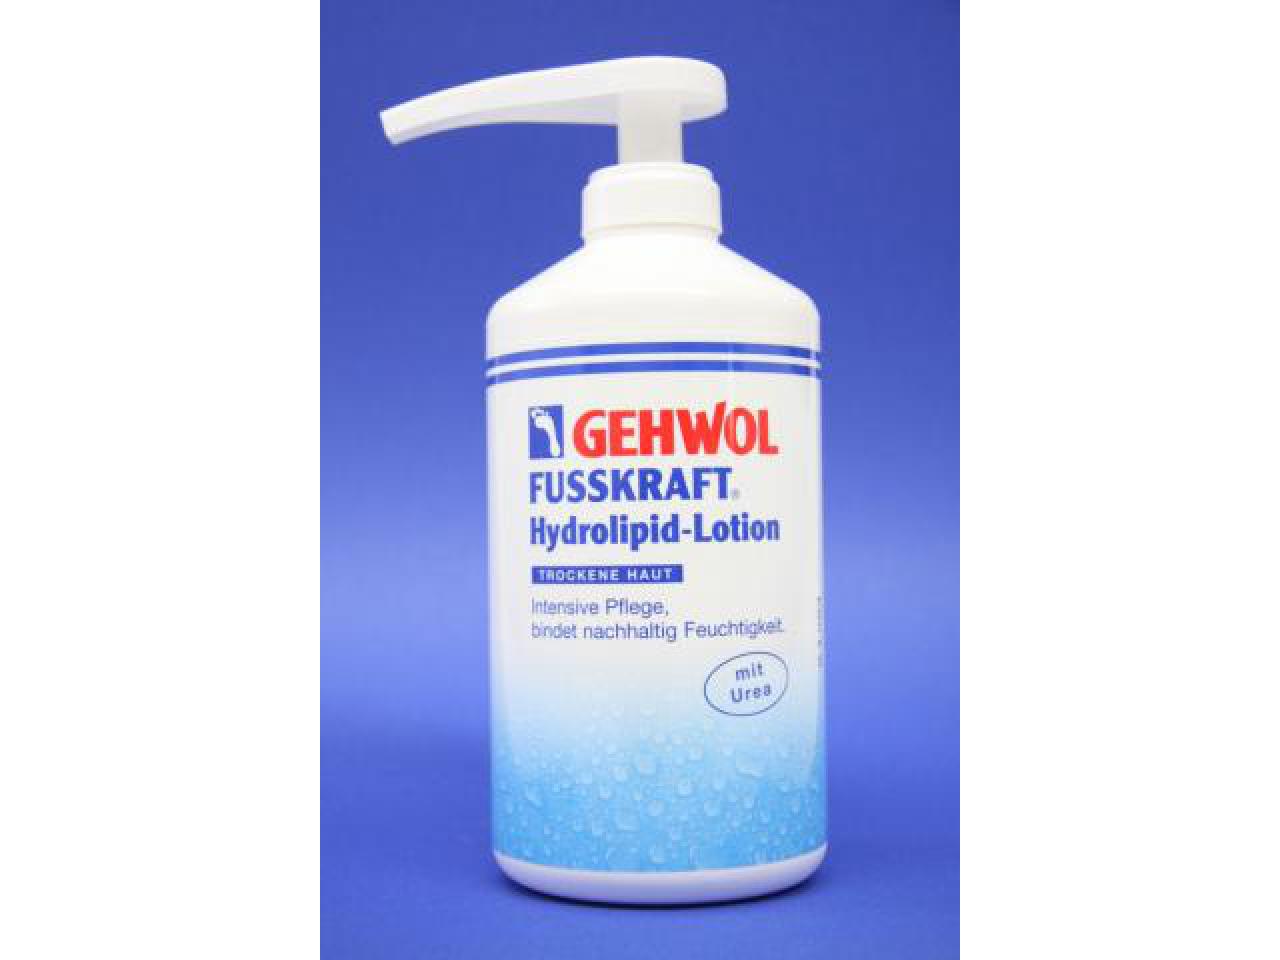 GEHWOL FUSSKRAFT Hydrolipid-Lotion 500 ml